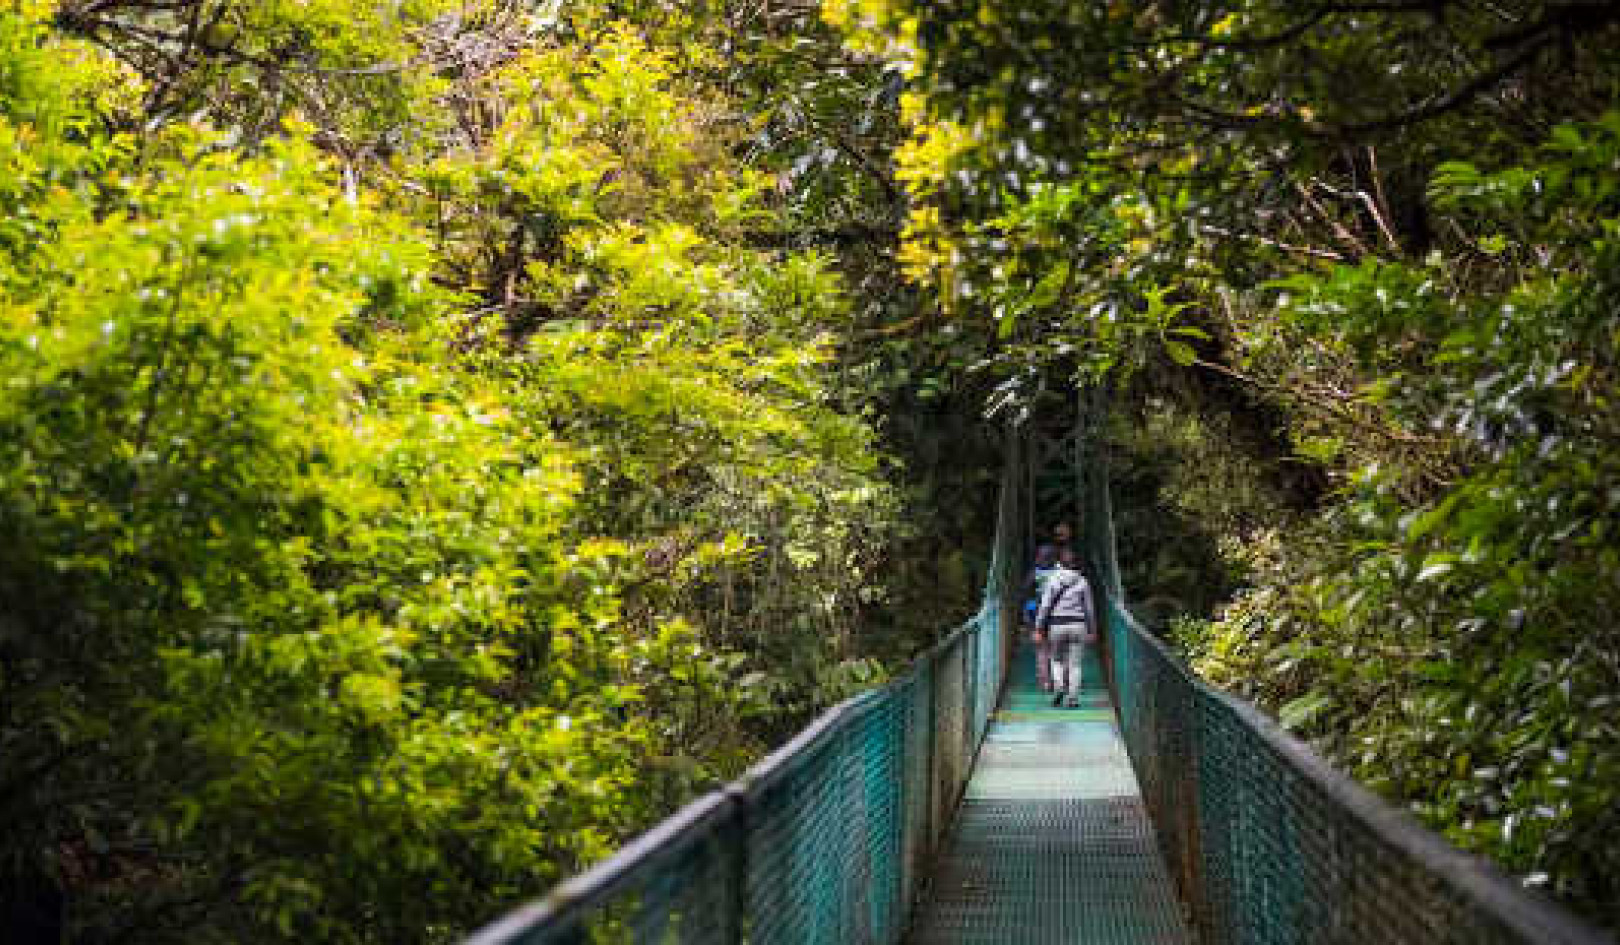 Jak ochrona bioróżnorodności opłaciła się Kostaryce?